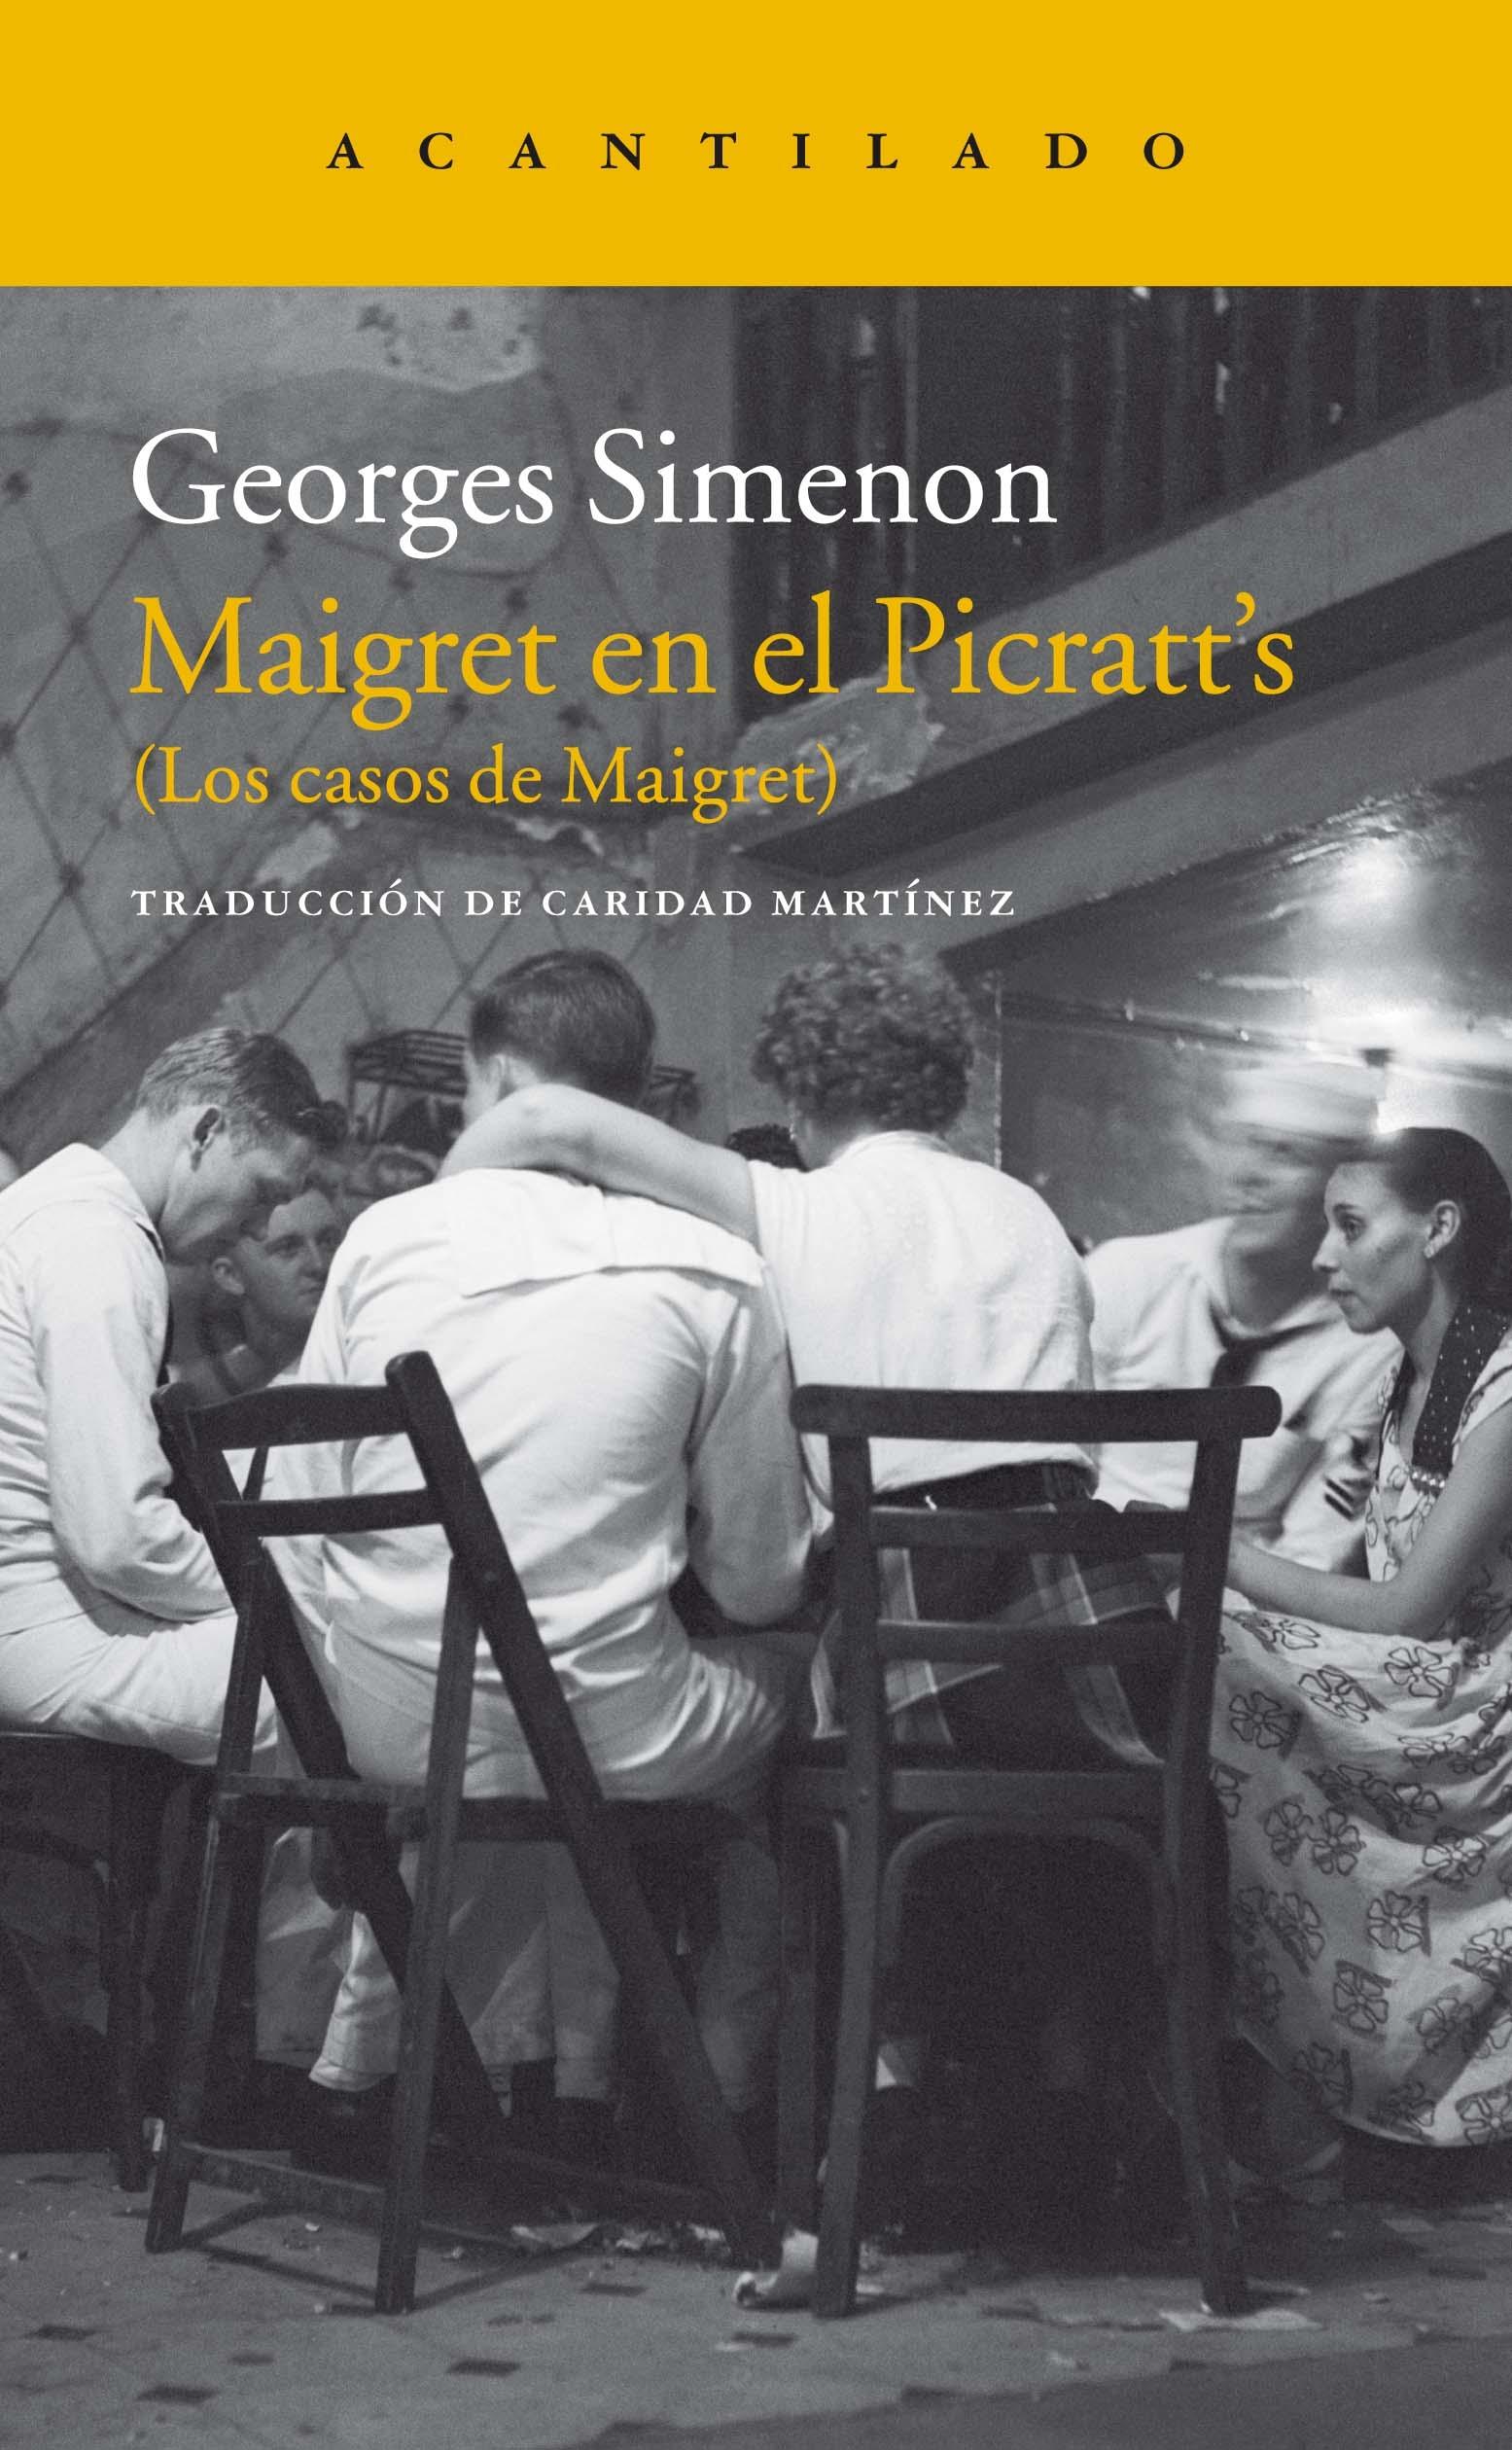 Maigret en el Picratt'S "Los Casos de Maigret"